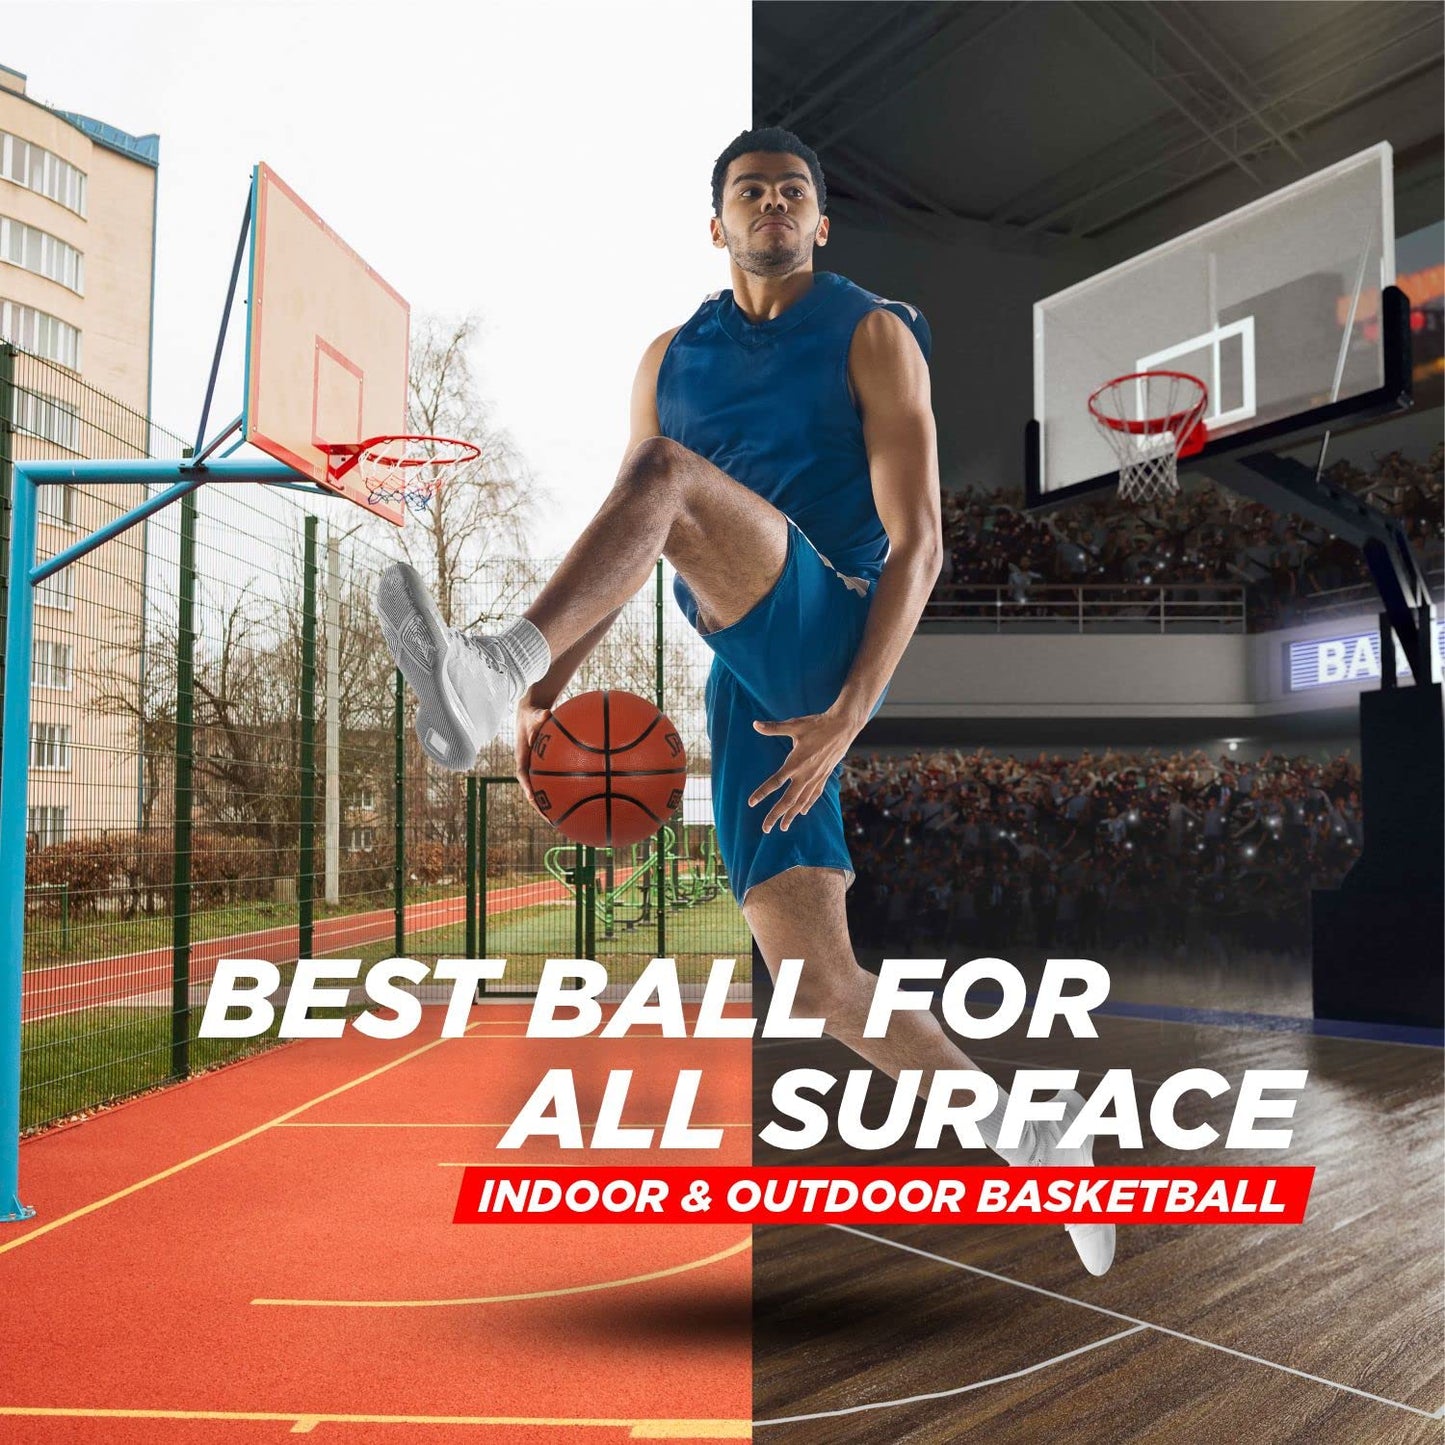 Spalding NBA Rebound Basketball, Brick - Best Price online Prokicksports.com